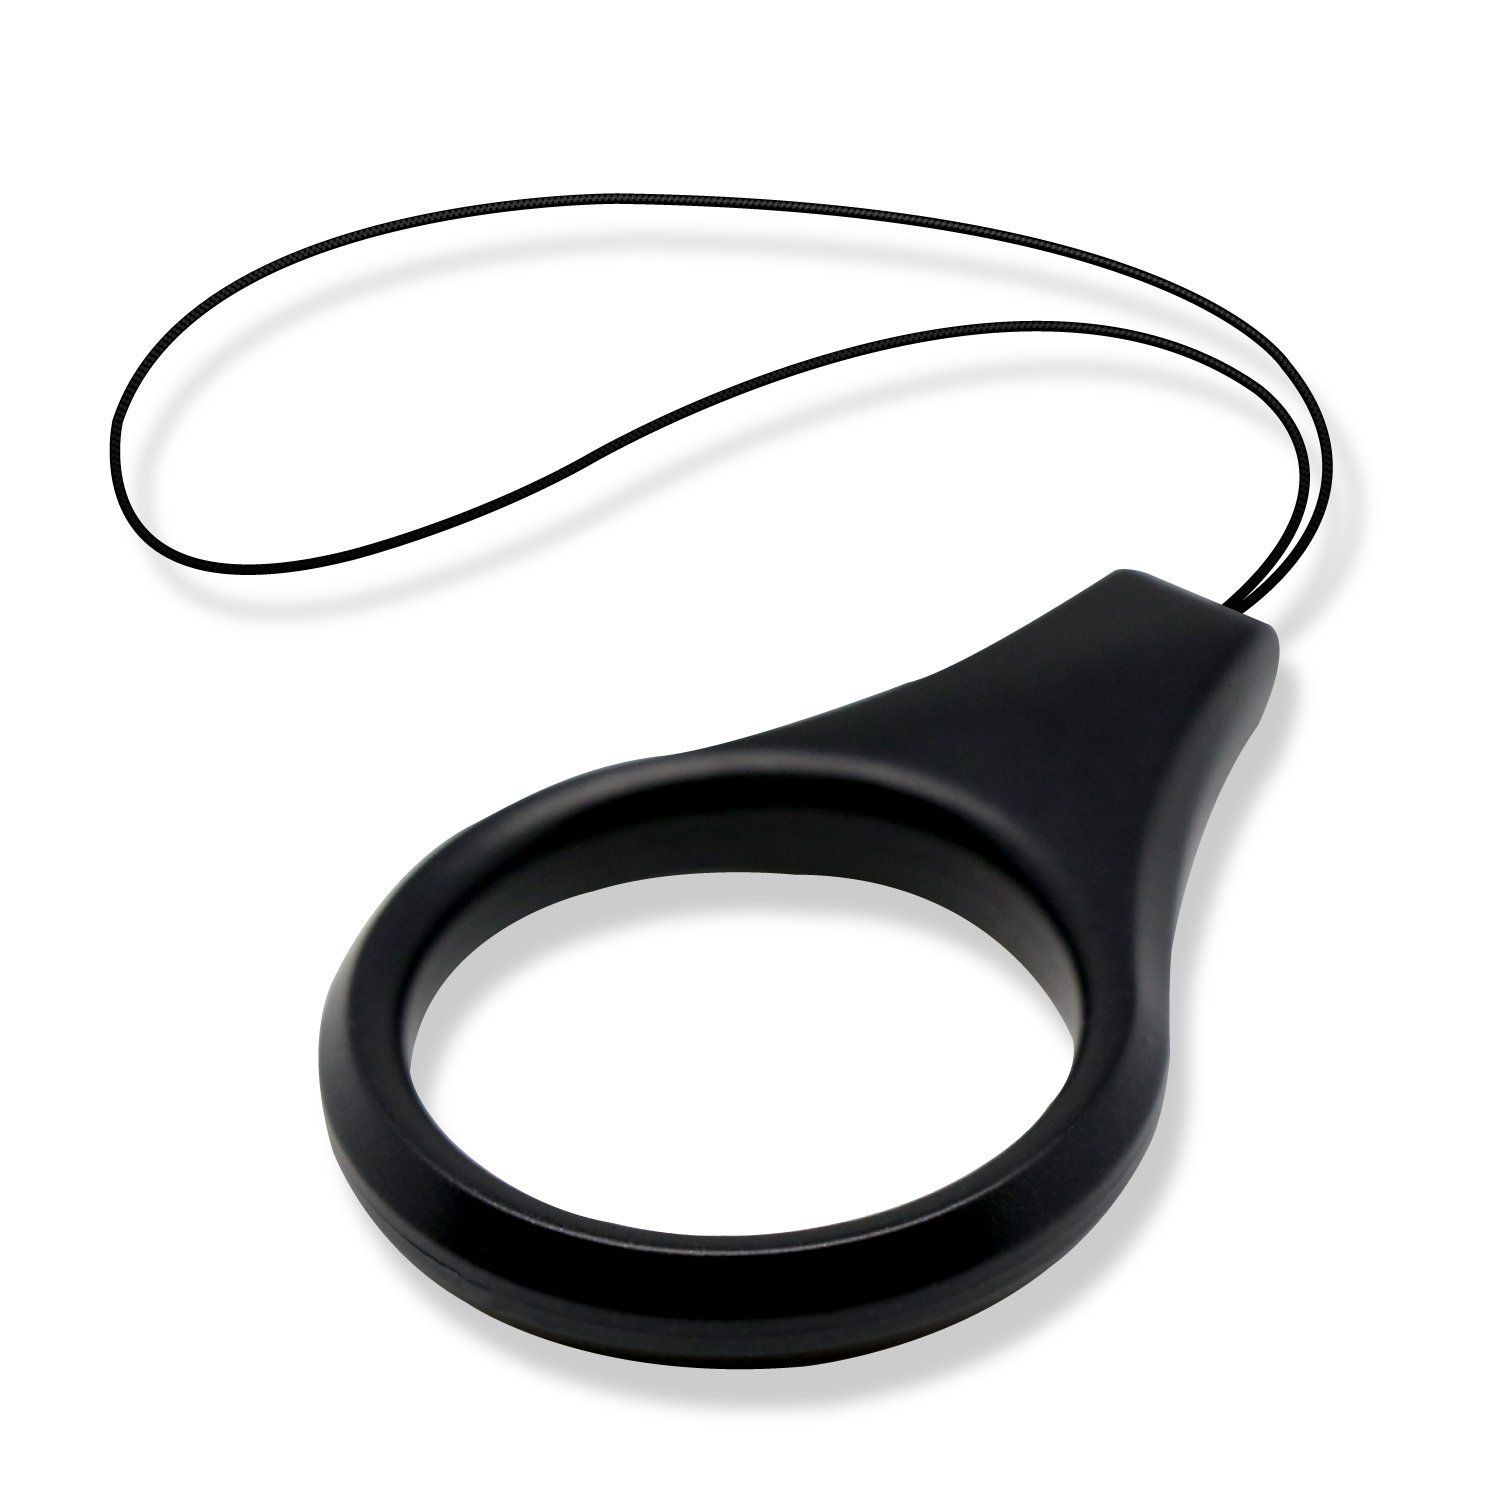 エレコム ストラップ リングストラップ 携帯 スマホ スマホ用 Lサイズ 内径22mm [指が滑りにくいシリコン製] ブラック P-STF01LBK